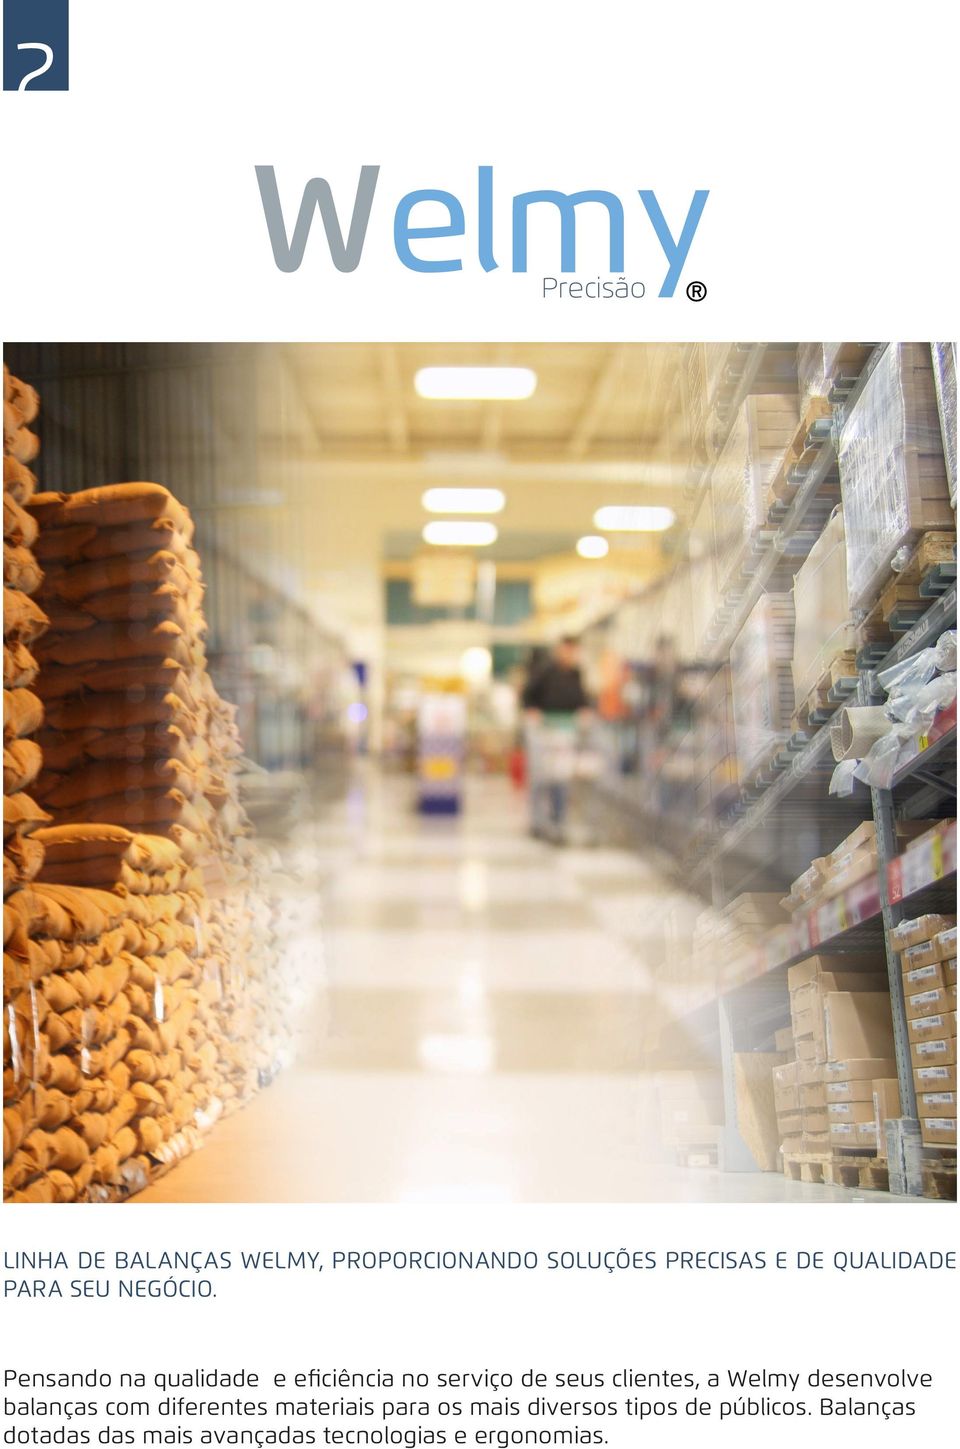 Pensando na qualidade e eficiência no serviço de seus clientes, a Welmy